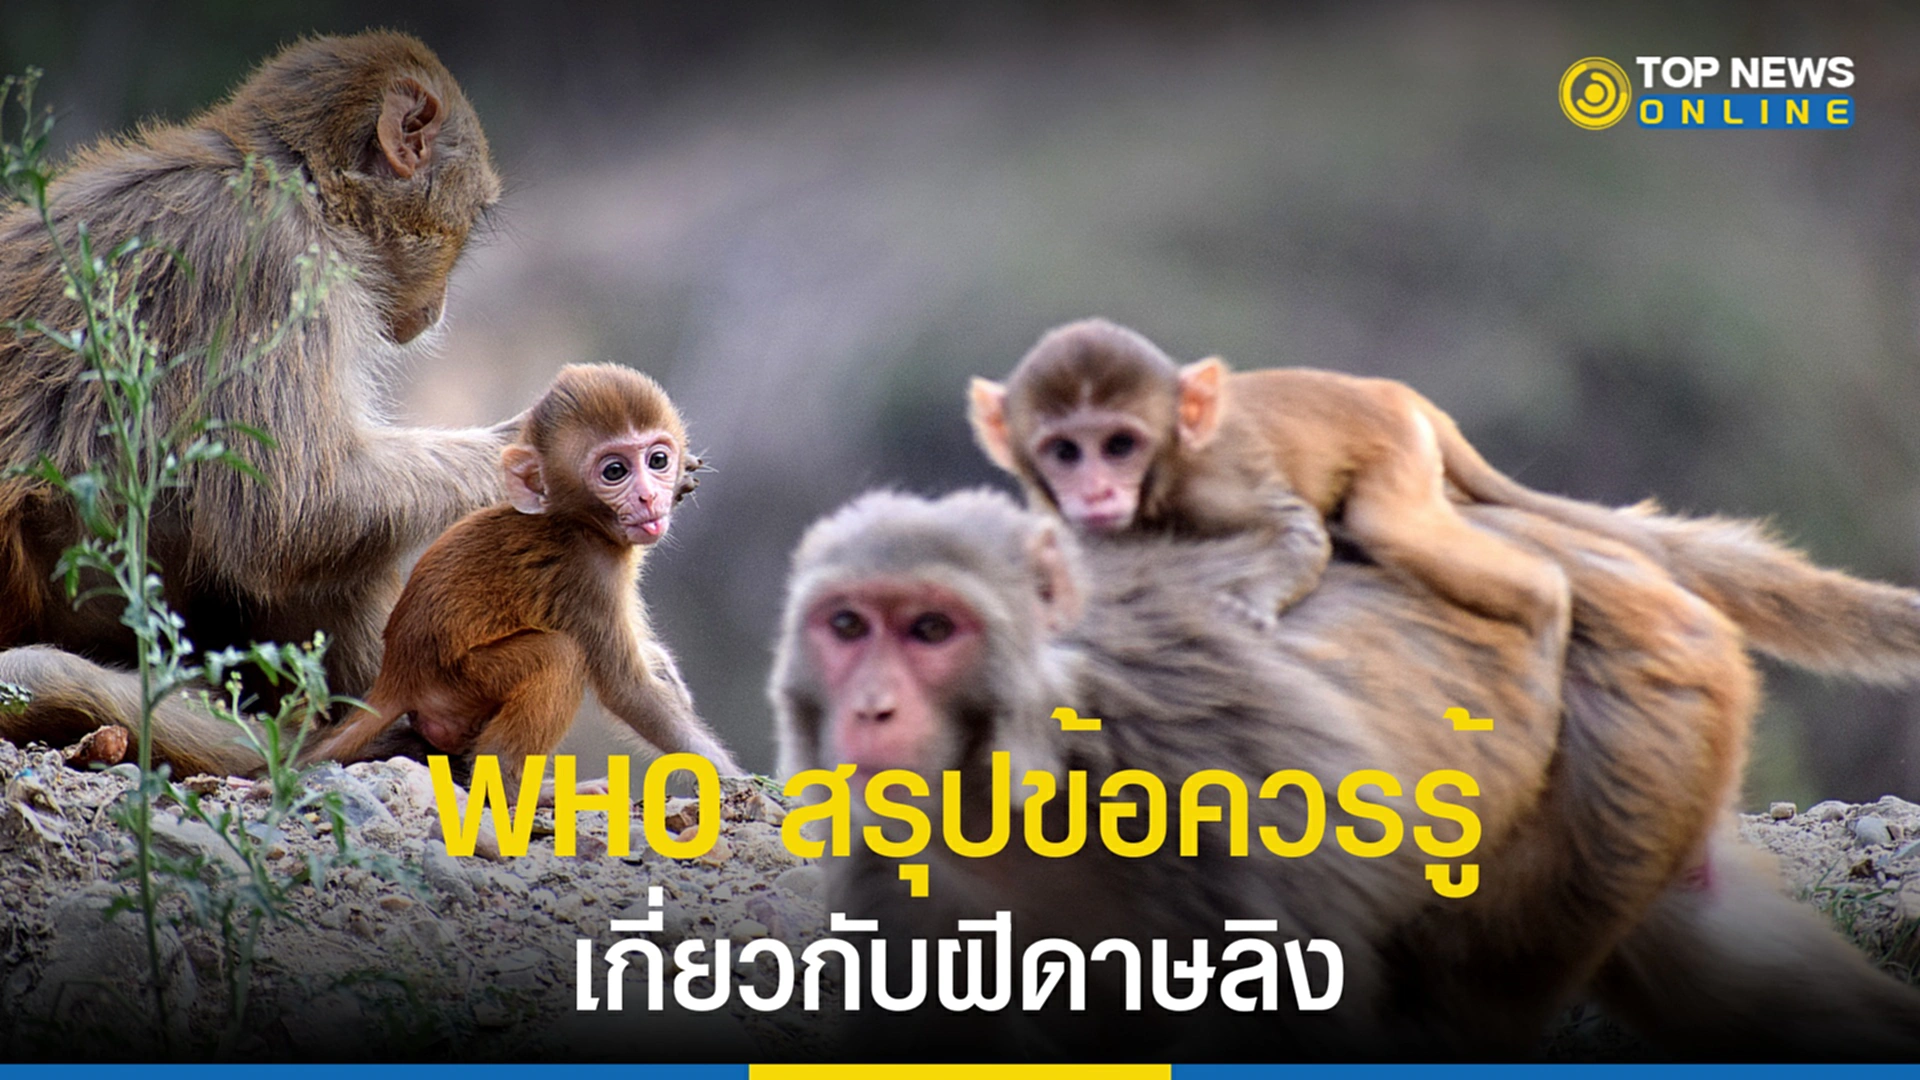 ฝีดาษลิง, ฝีดาษวานร, WHO, องค์การอนามัยโลก, สรุปฝีดาษลิง